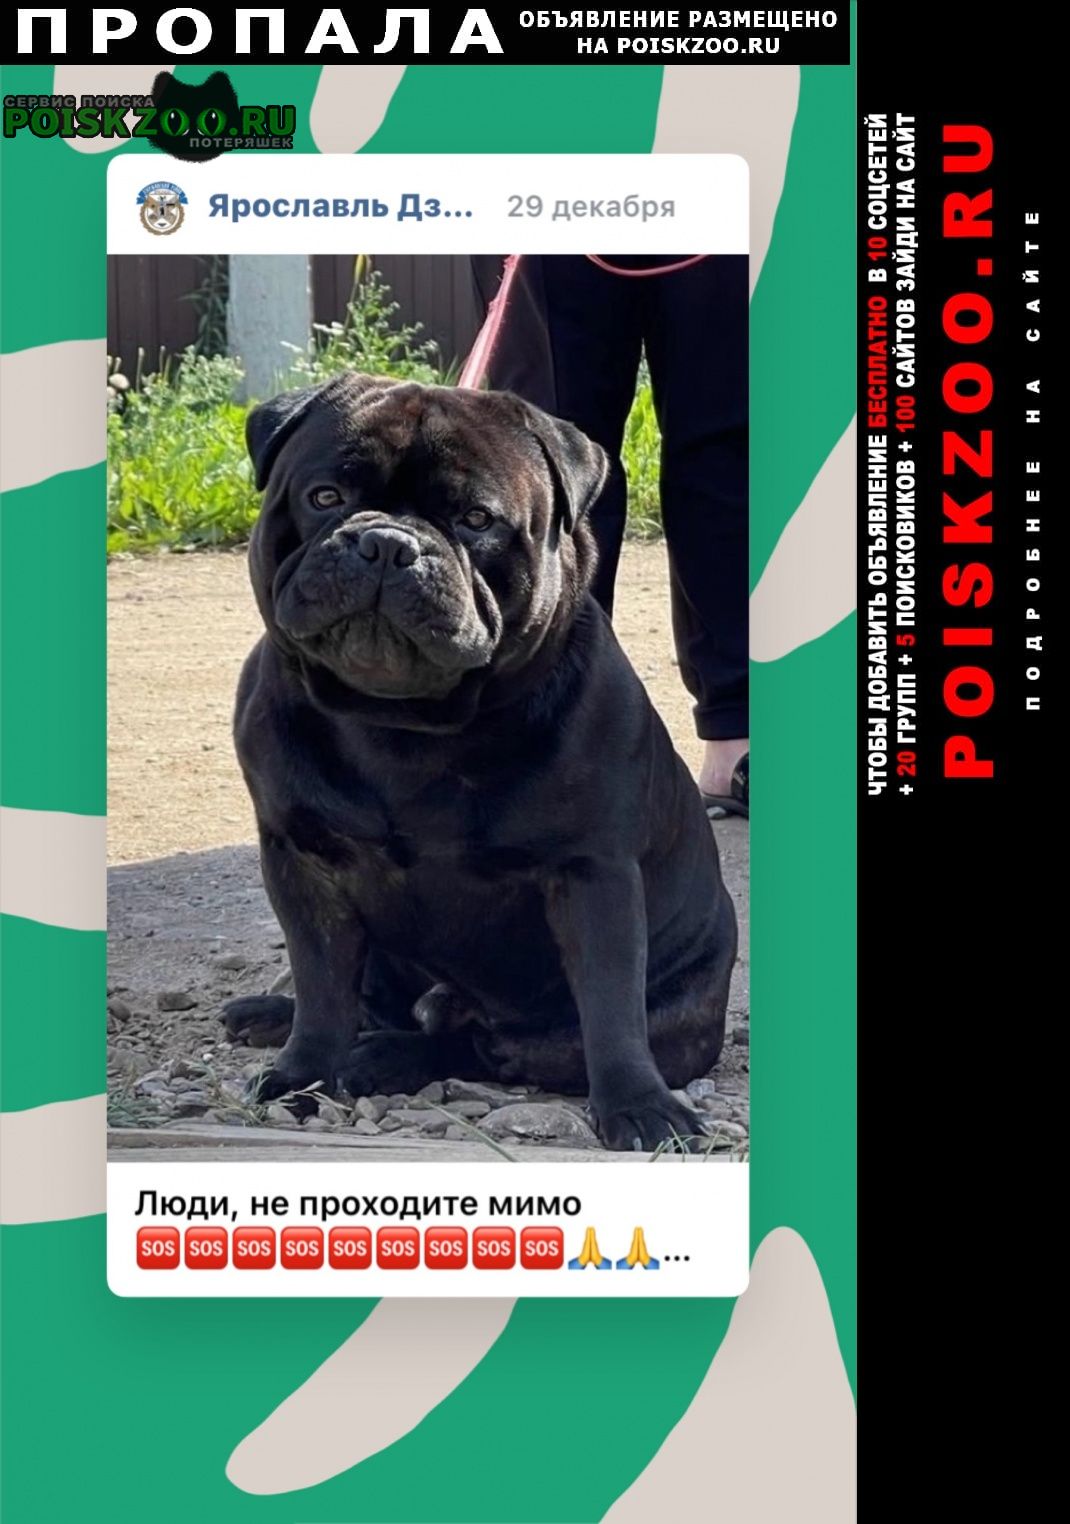 Пропала собака кобель помогите пожалуйста найти собачку и расп Ярославль